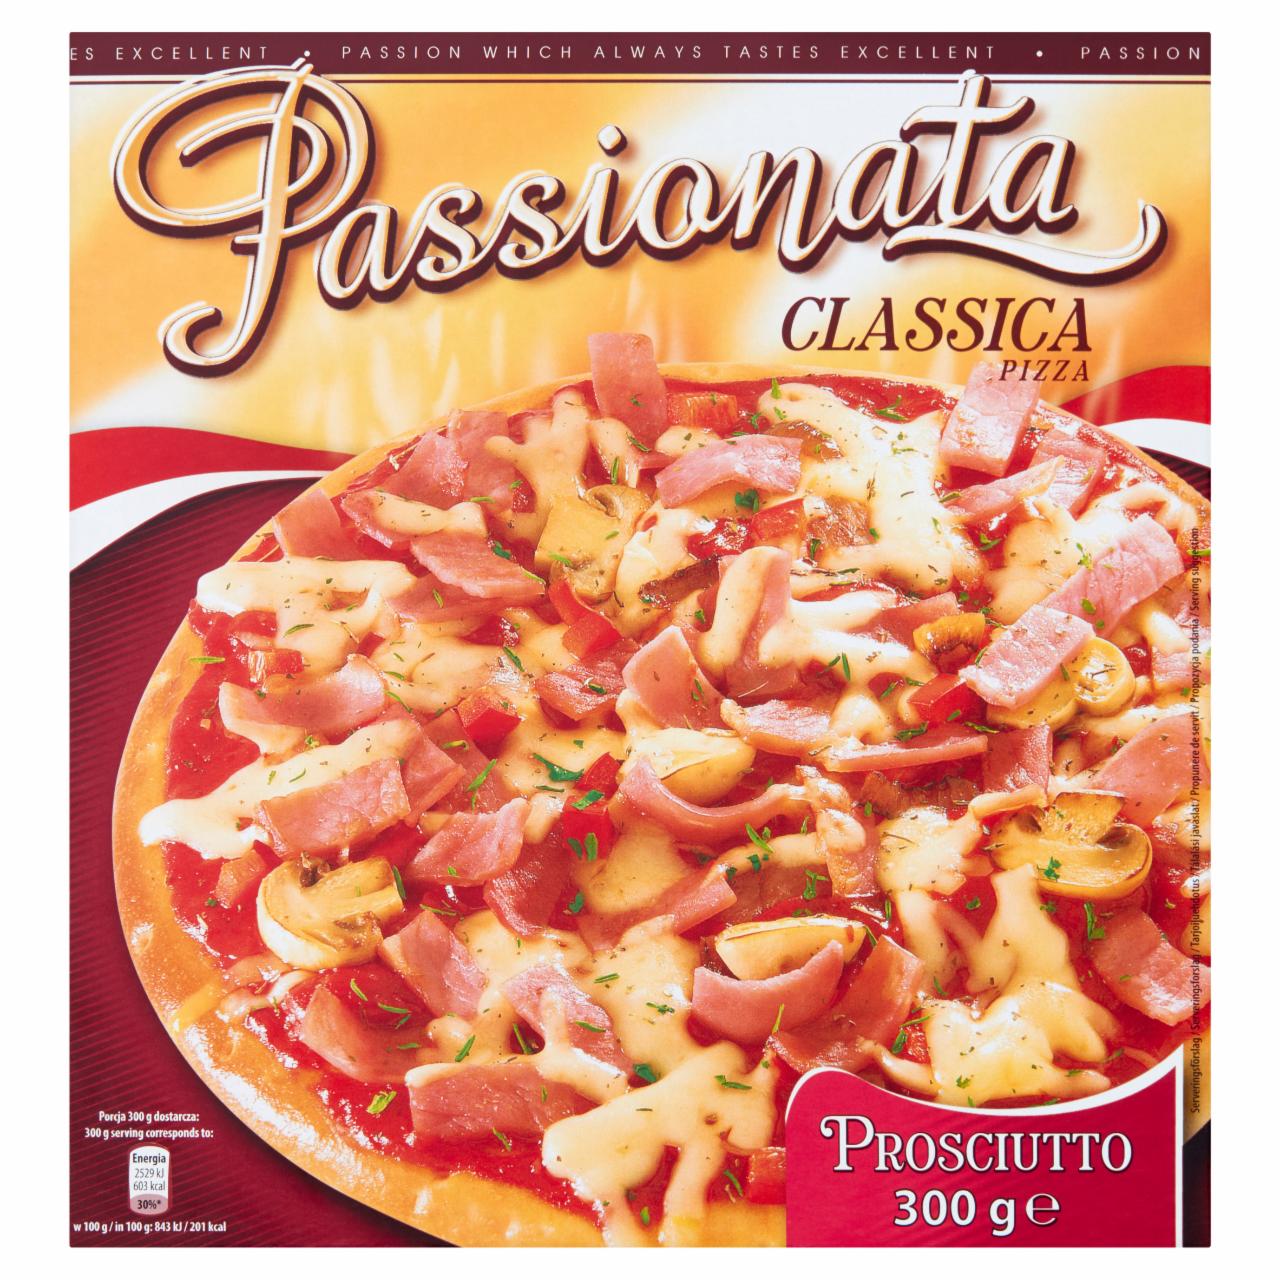 Képek - Passionata Classica Prosciutto gyorsfagyasztott pizza sonkával 300 g